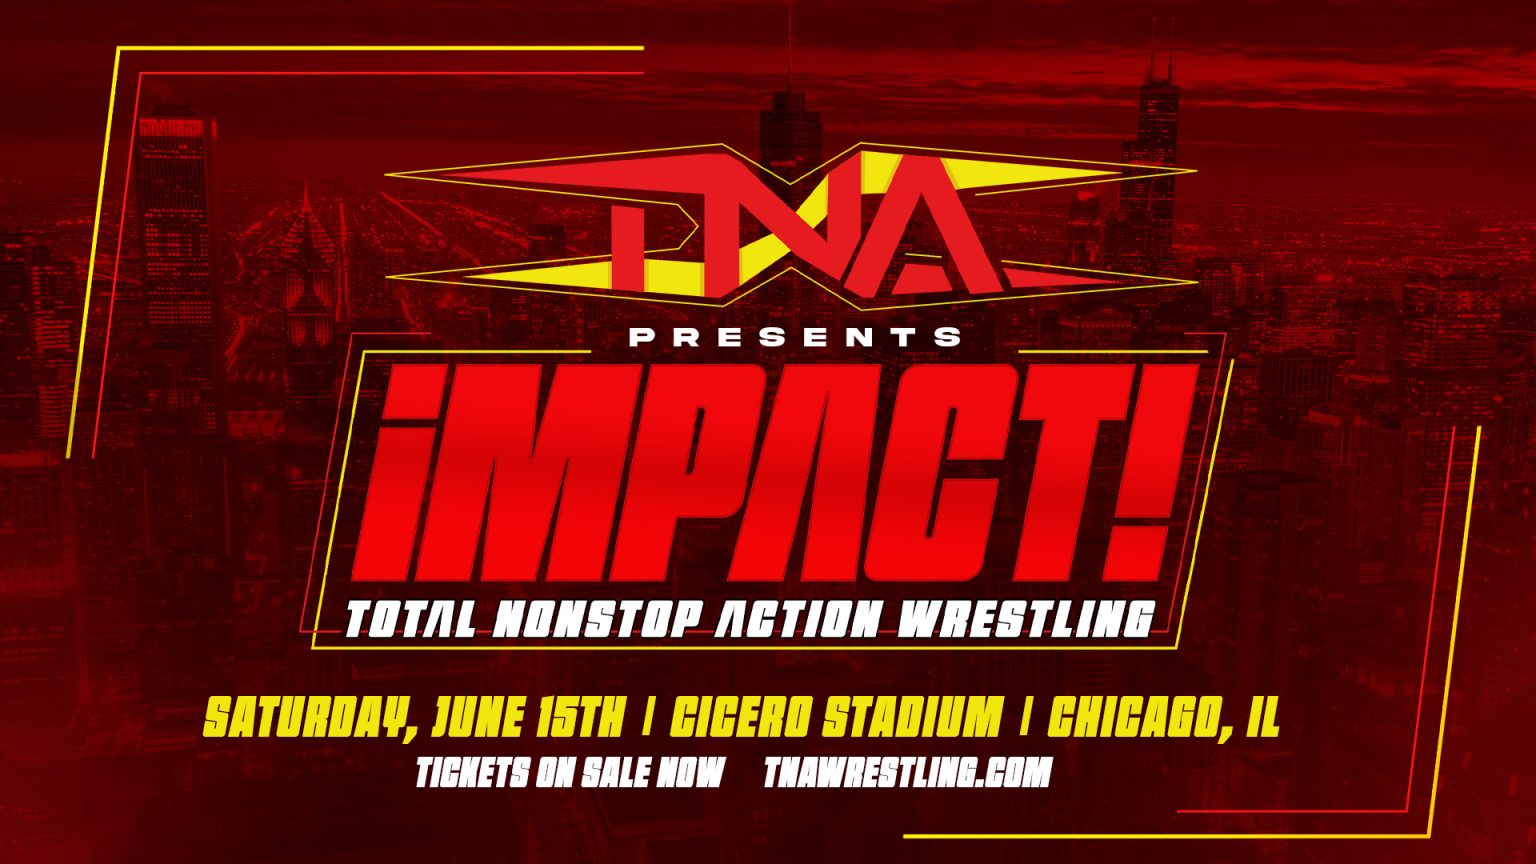 TNA Wrestling Returns To Chicago For Back-to-Back Nights Of Live Pro Wrestling, June 14-15 At Cicero Stadium – TNA Wrestling